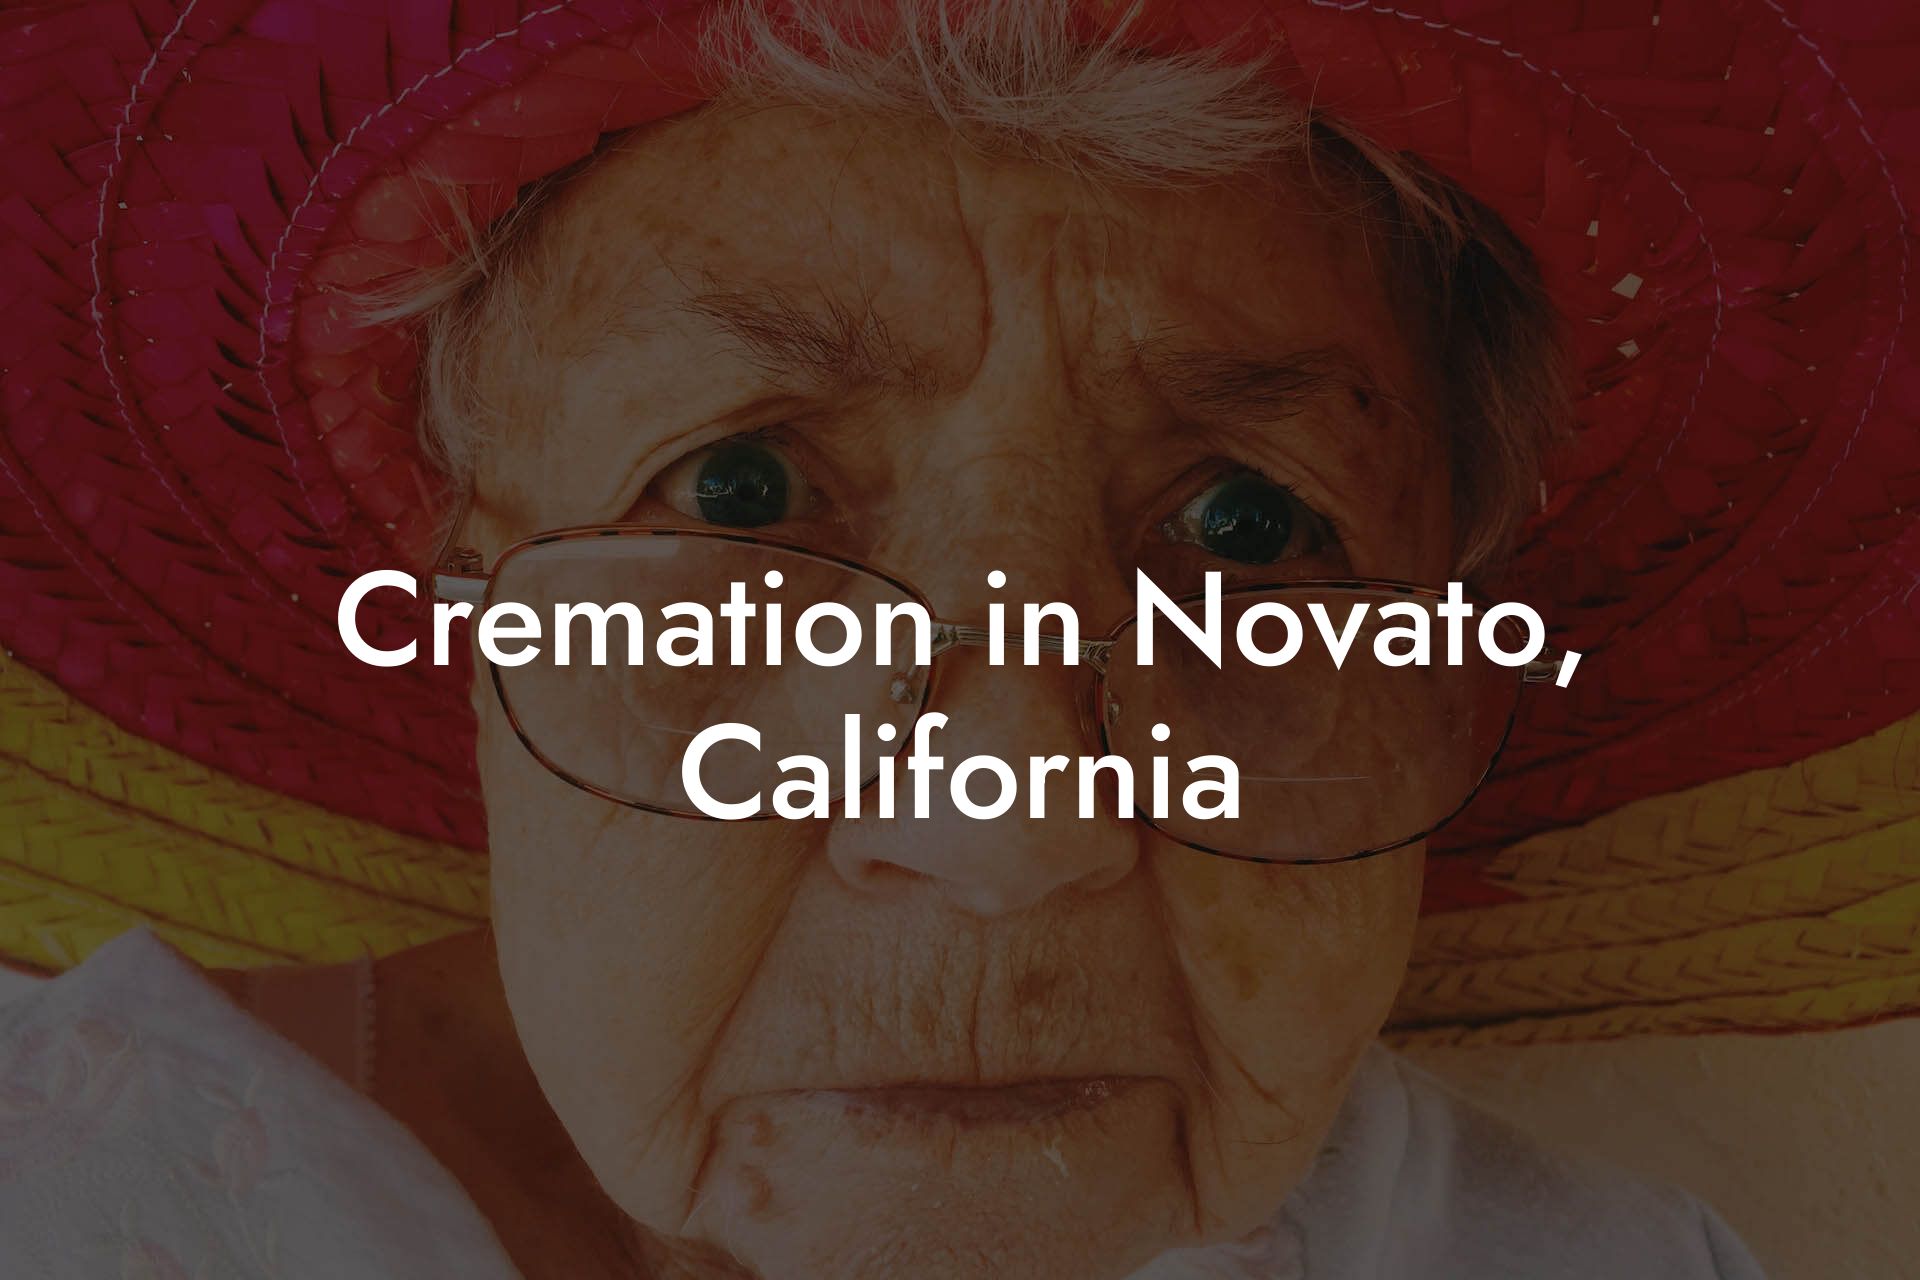 Cremation in Novato, California